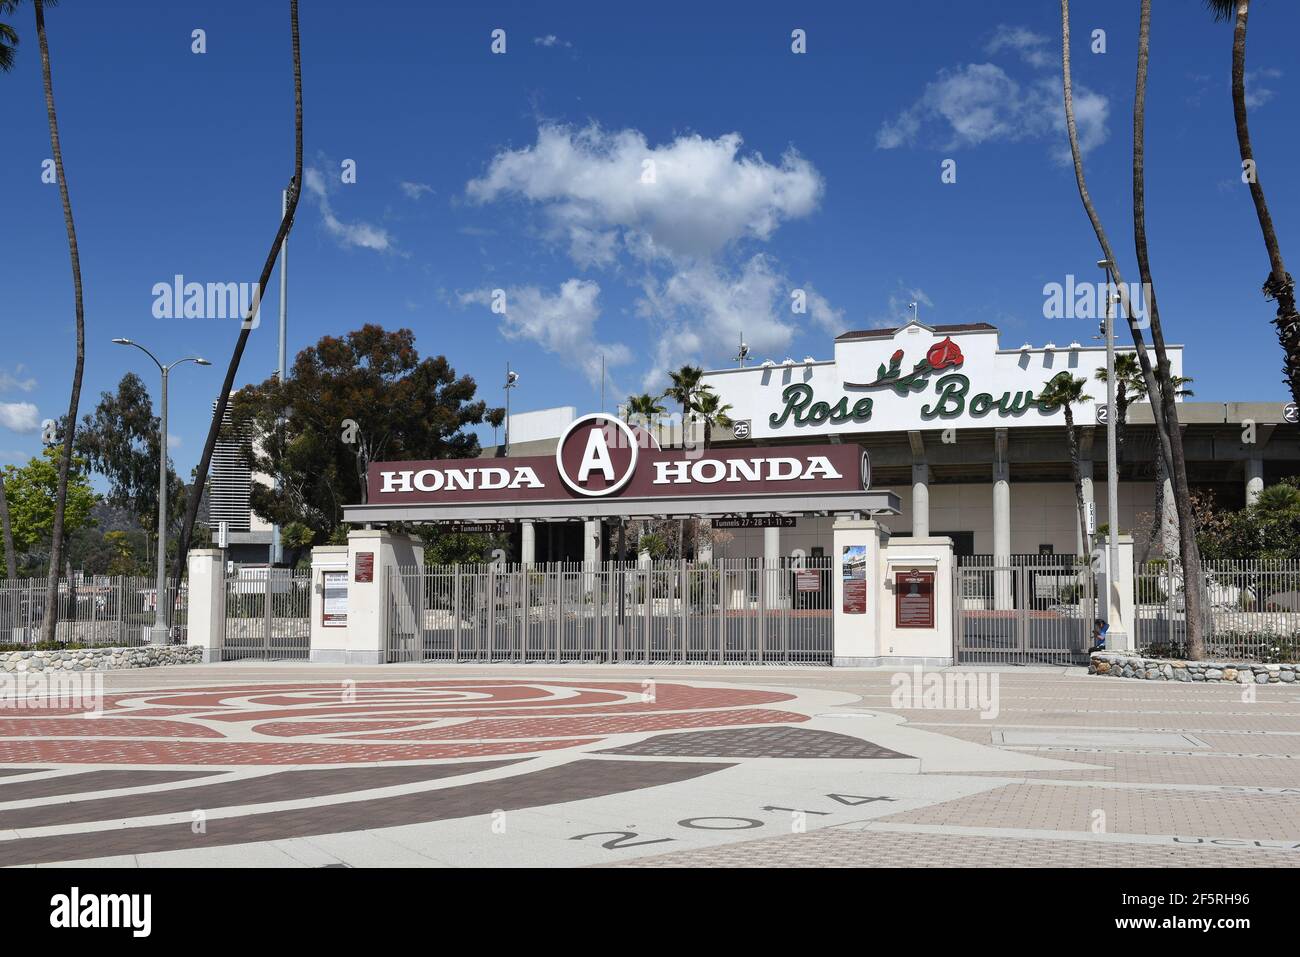 PASADENA, CALIFORNIA - 26 MAR 2021: El estadio de fútbol Rose Bowl en el sur de California. Foto de stock